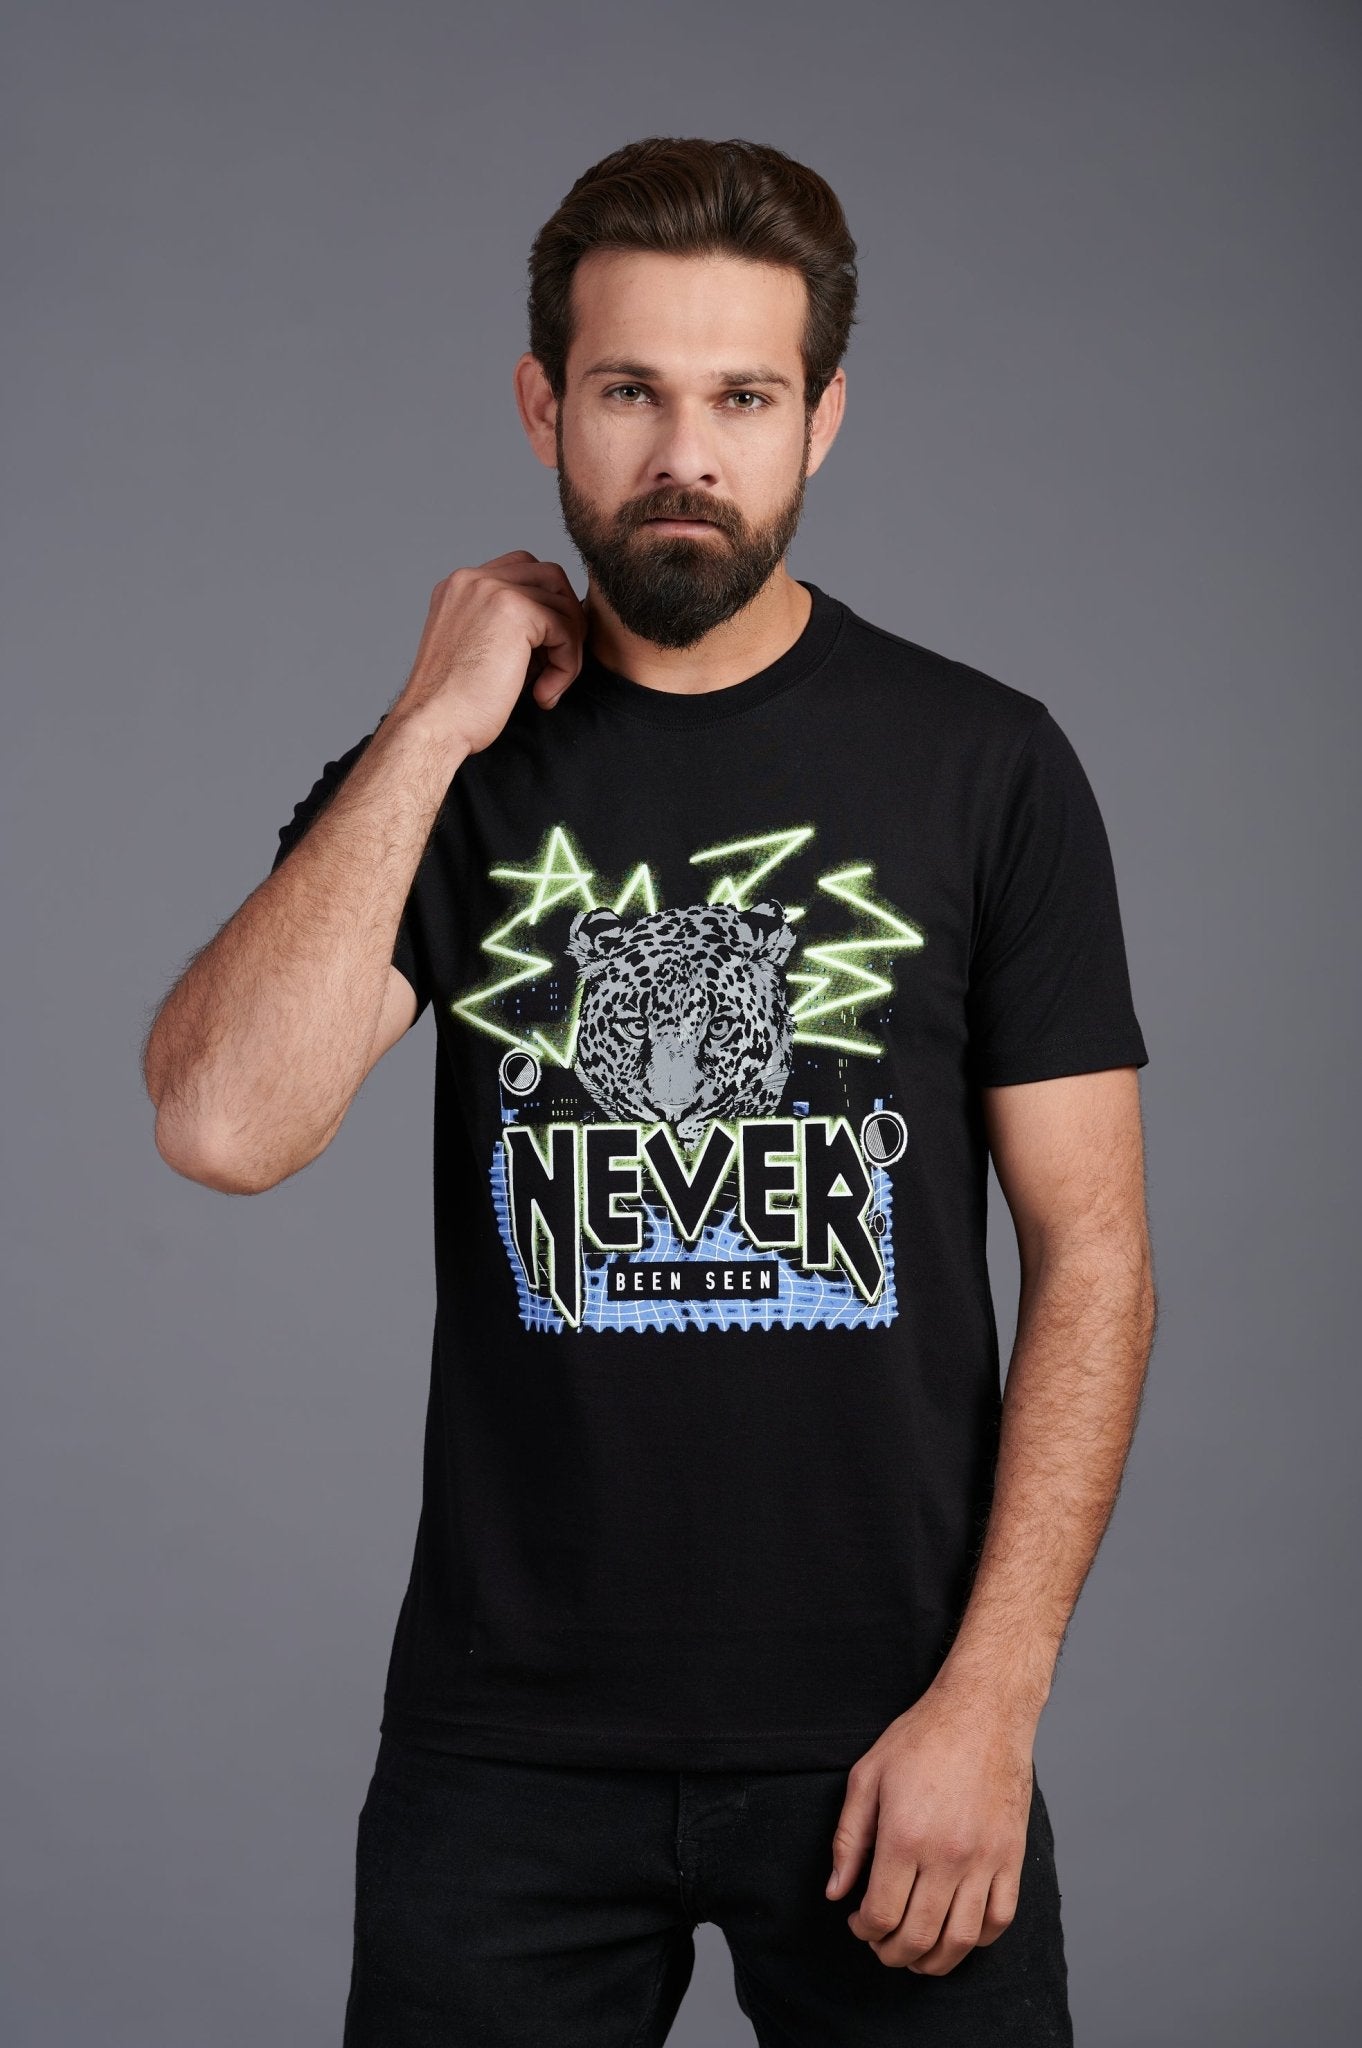 Never Been Seen Printed Black T-Shirt for Men - Go Devil